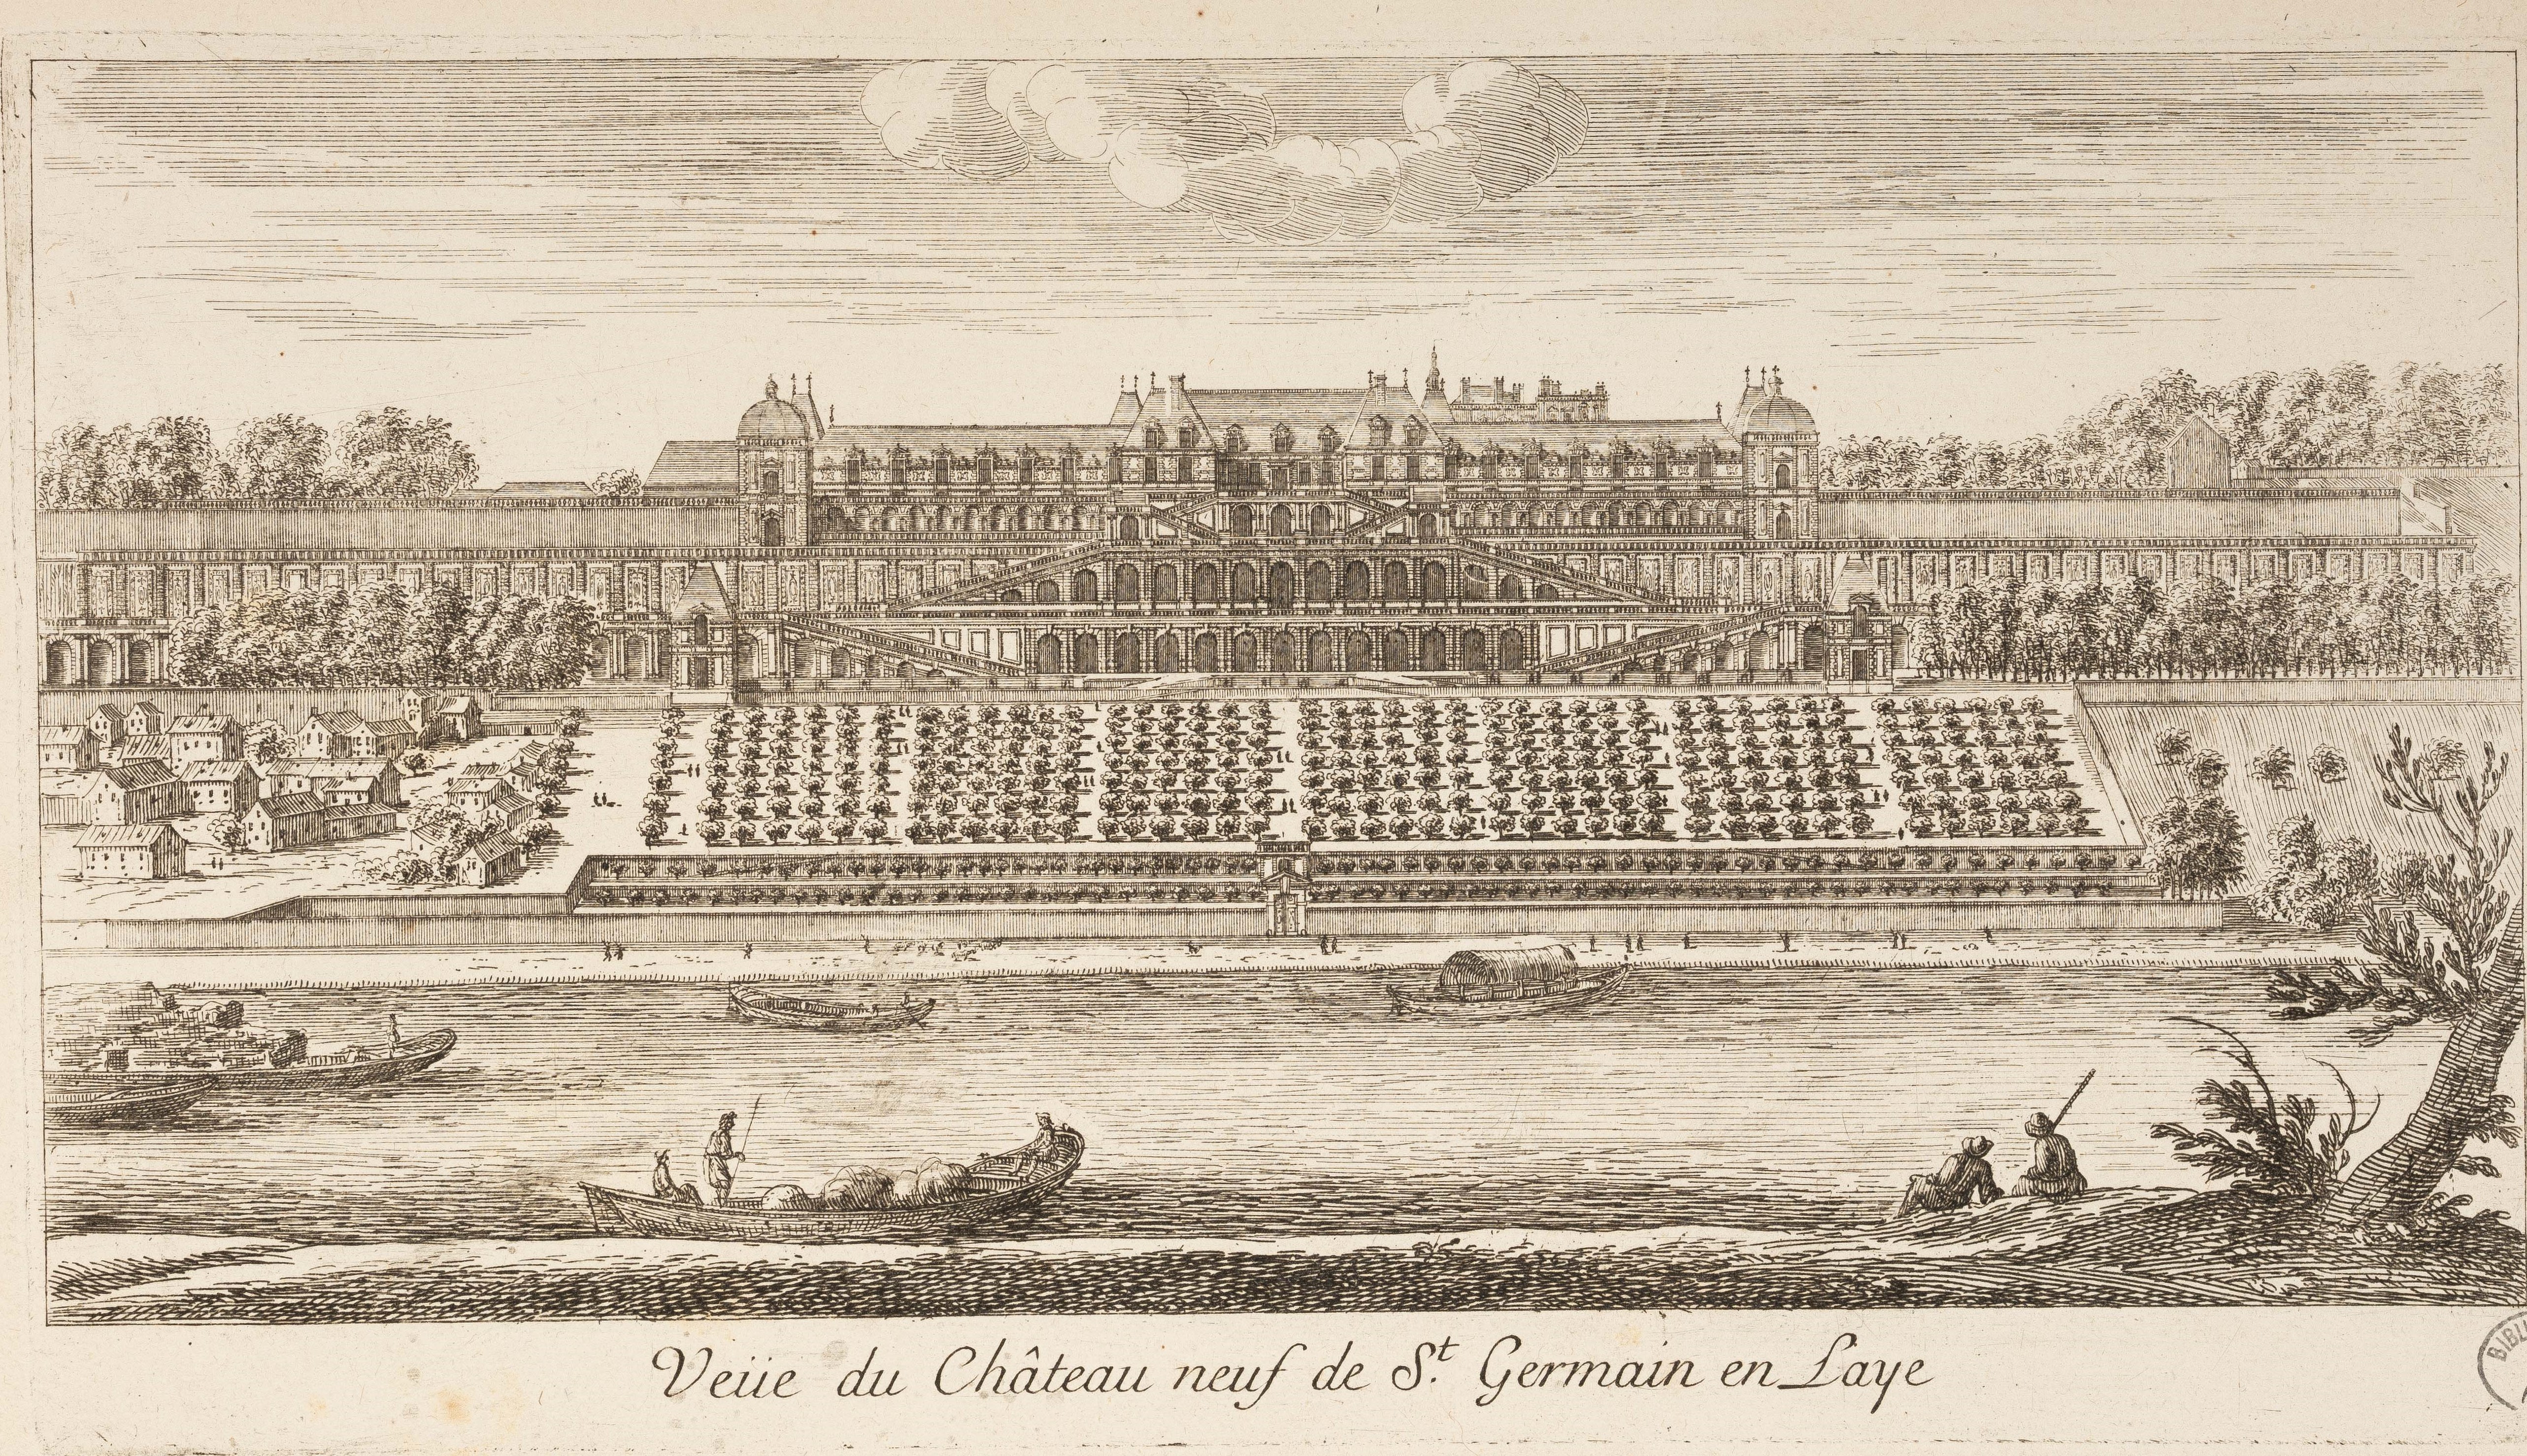 Israël Silvestre : Veüe du Château neuf de St Germain en Laye.